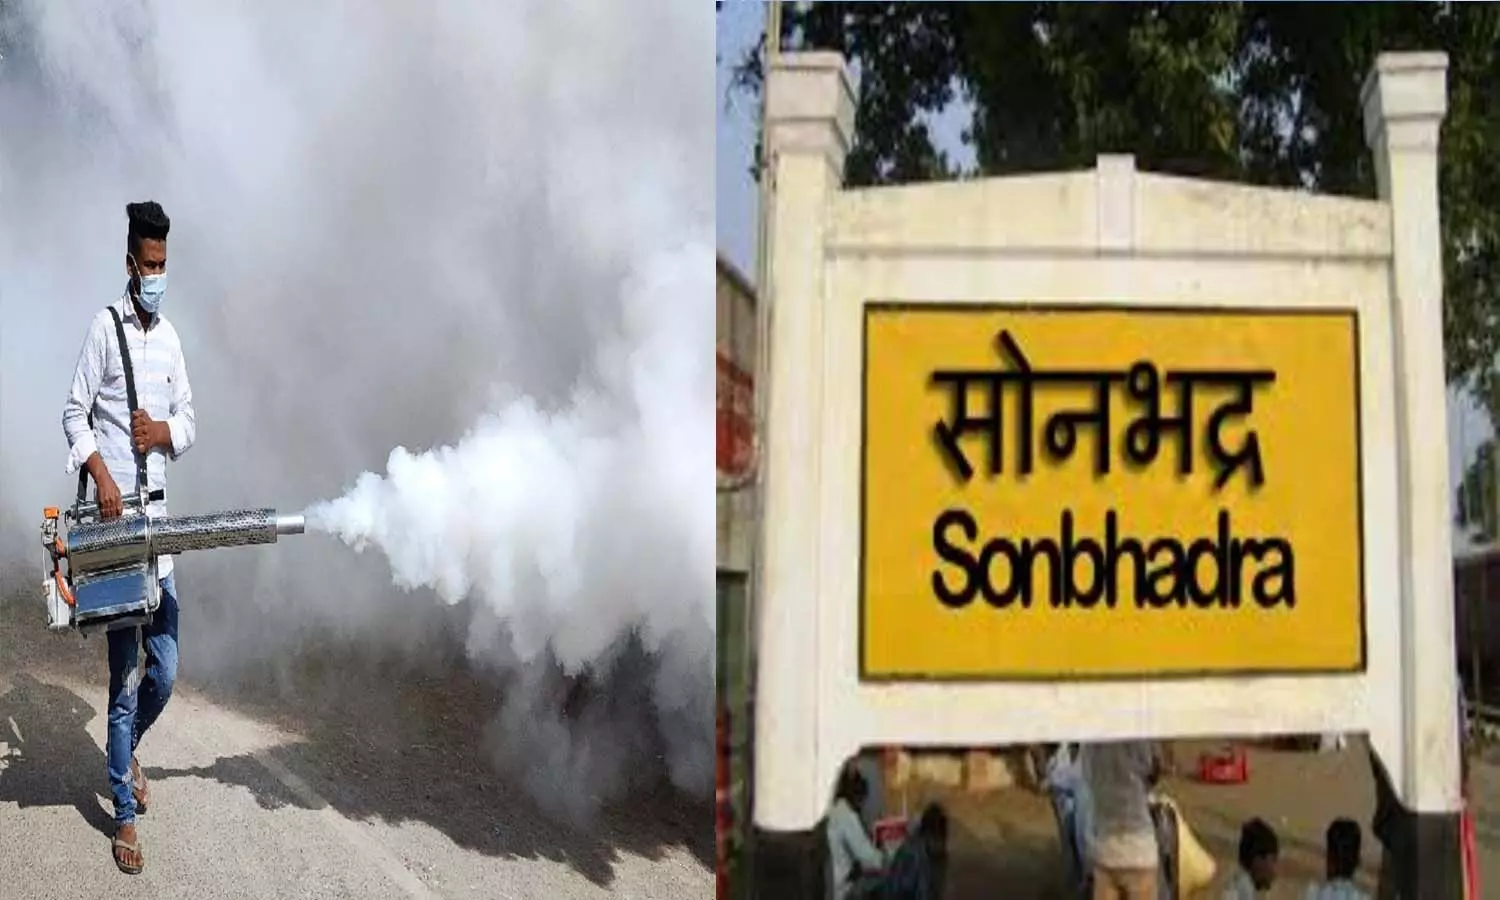 Sonbhadra News: सोनभद्र में होगा 50 मिट्रिक टन मच्छररोधी दवा का छिड़काव, मकरा की मौतों को देखते हुए केंद्र से मिली मंजूरी